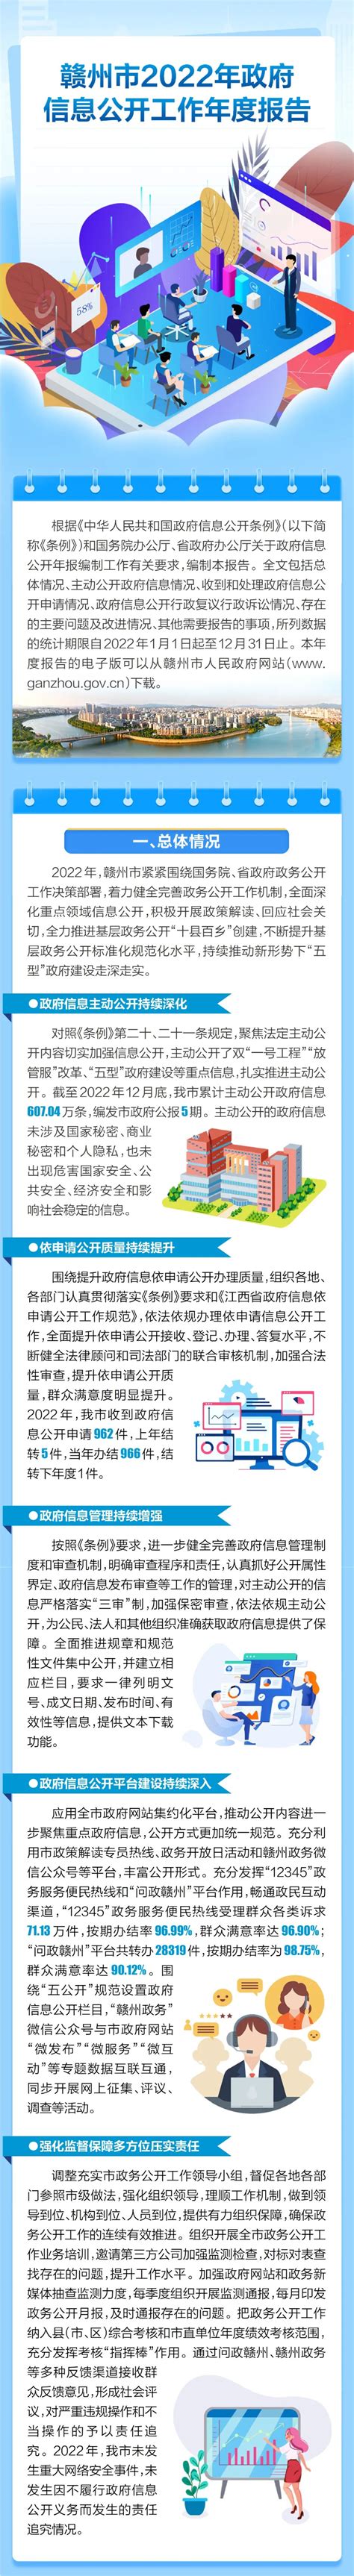 赣州市2022年政府信息公开工作年度报告（图文版） | 赣州市政府信息公开